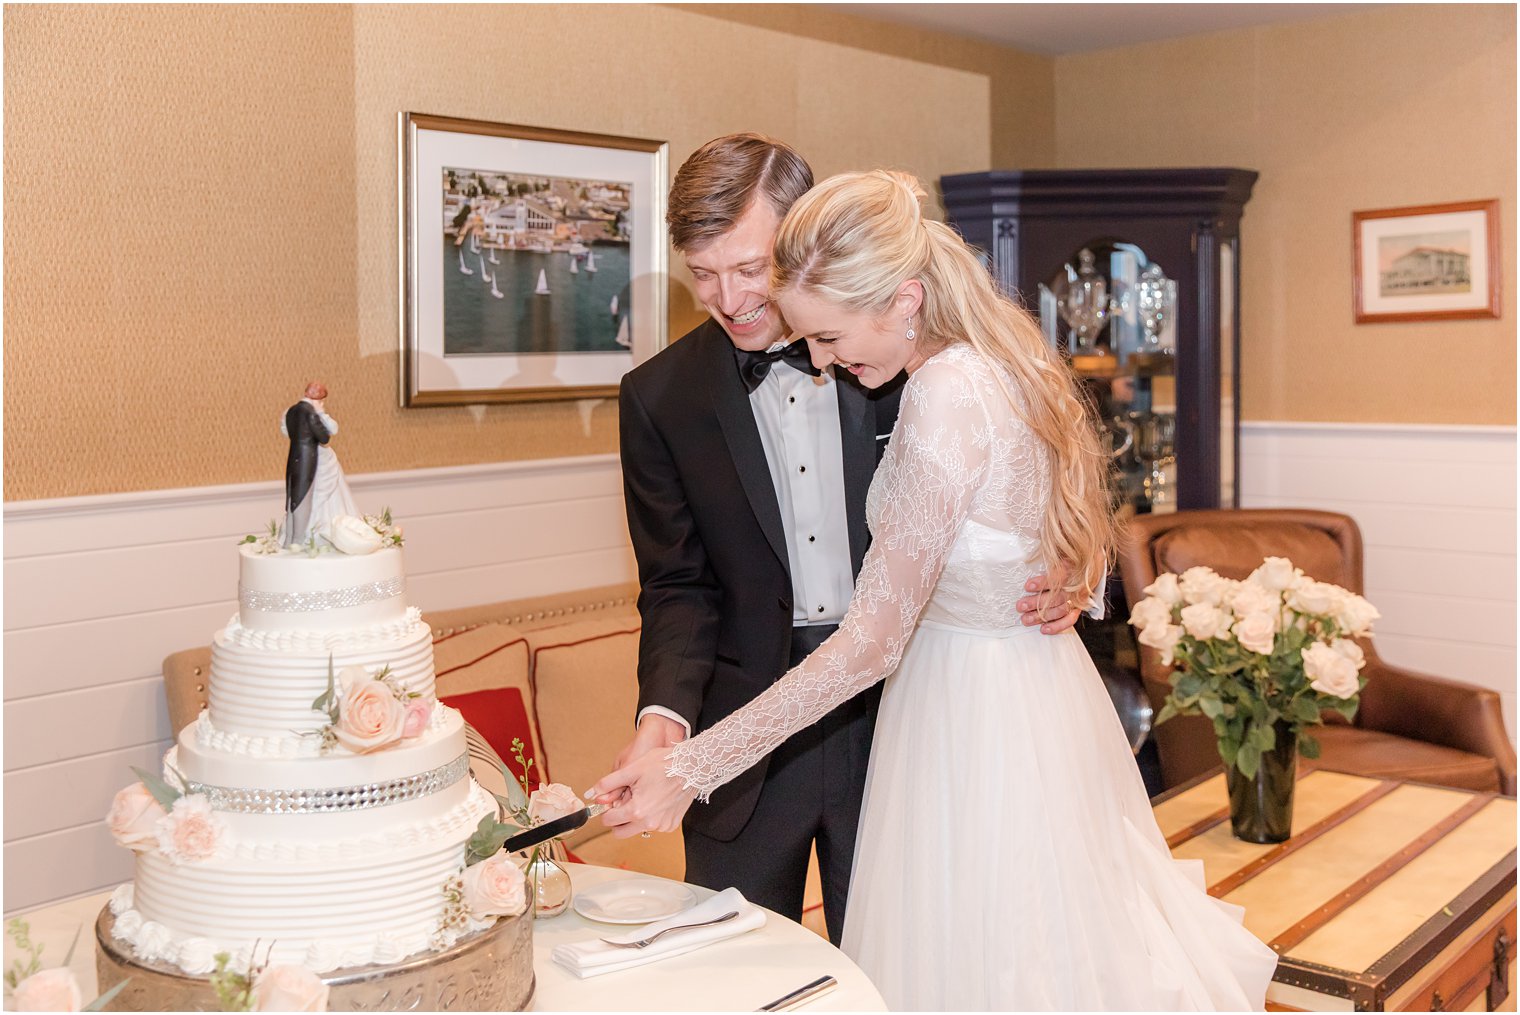 newlyweds cut cake during NJ wedding reception 